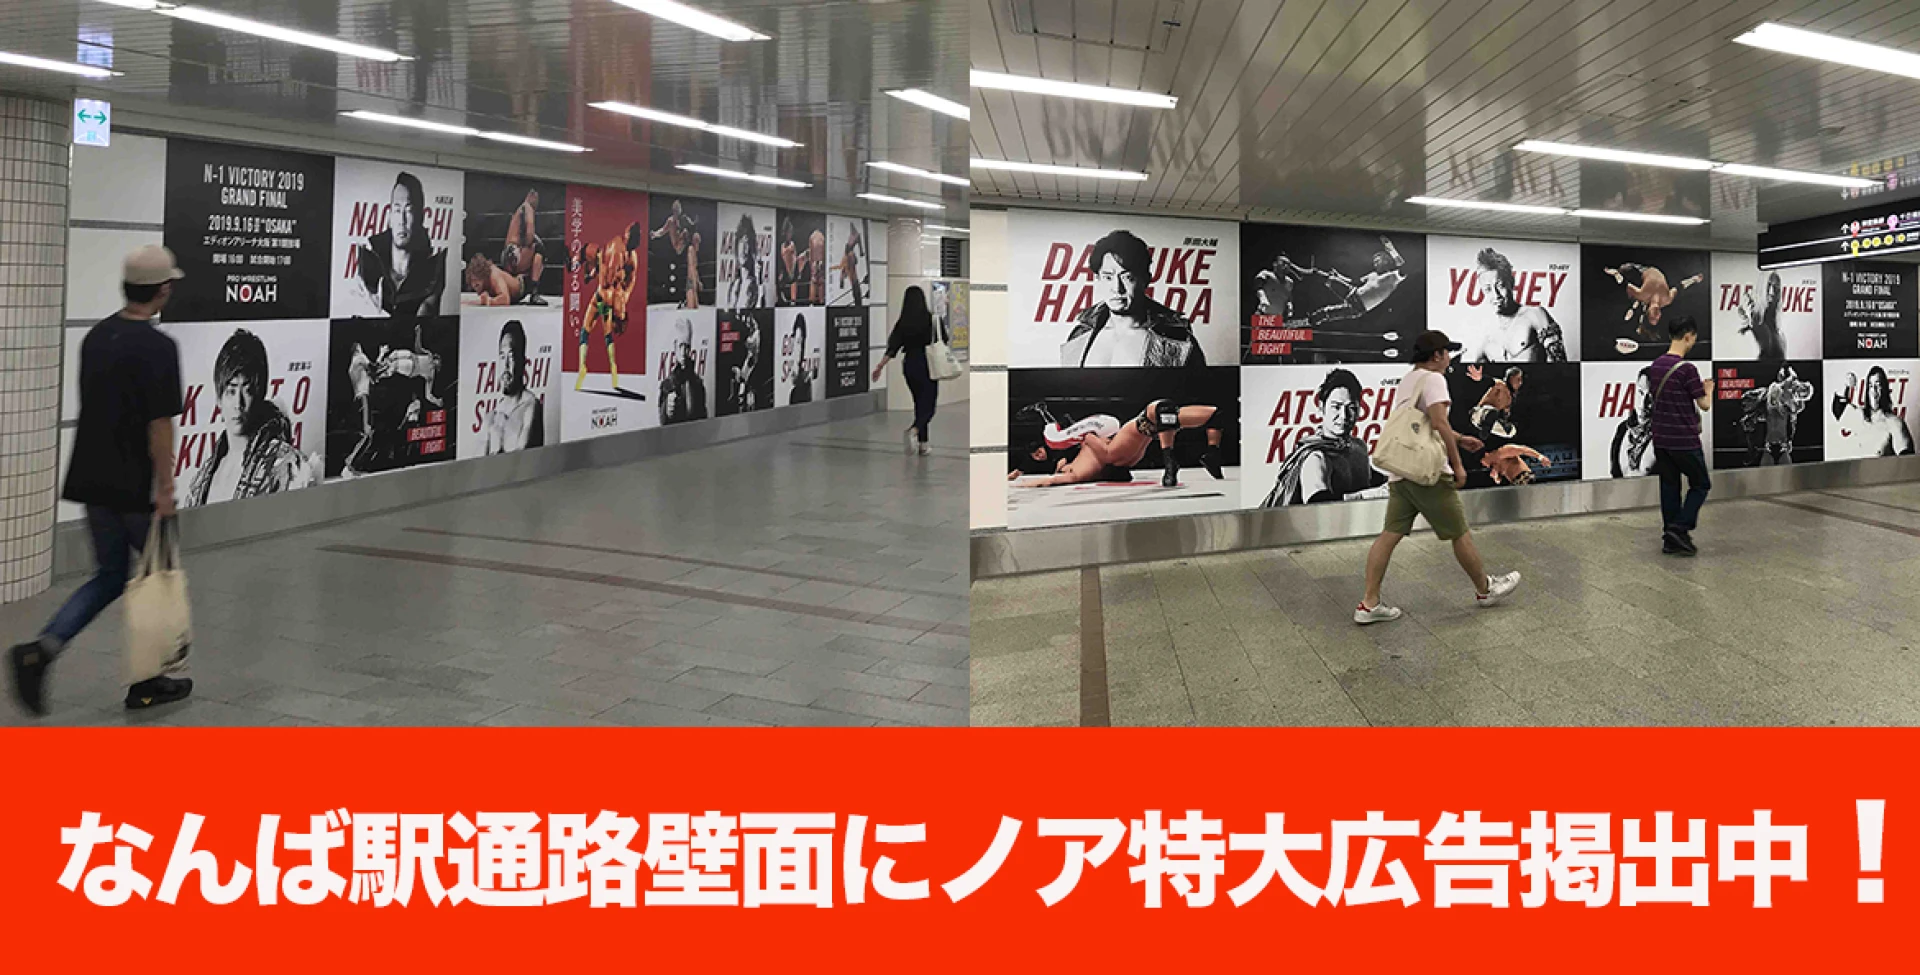 【ノア選手が壁一面に!?】大阪メトロなんば駅改札外に大型ポスター広告展開中!!